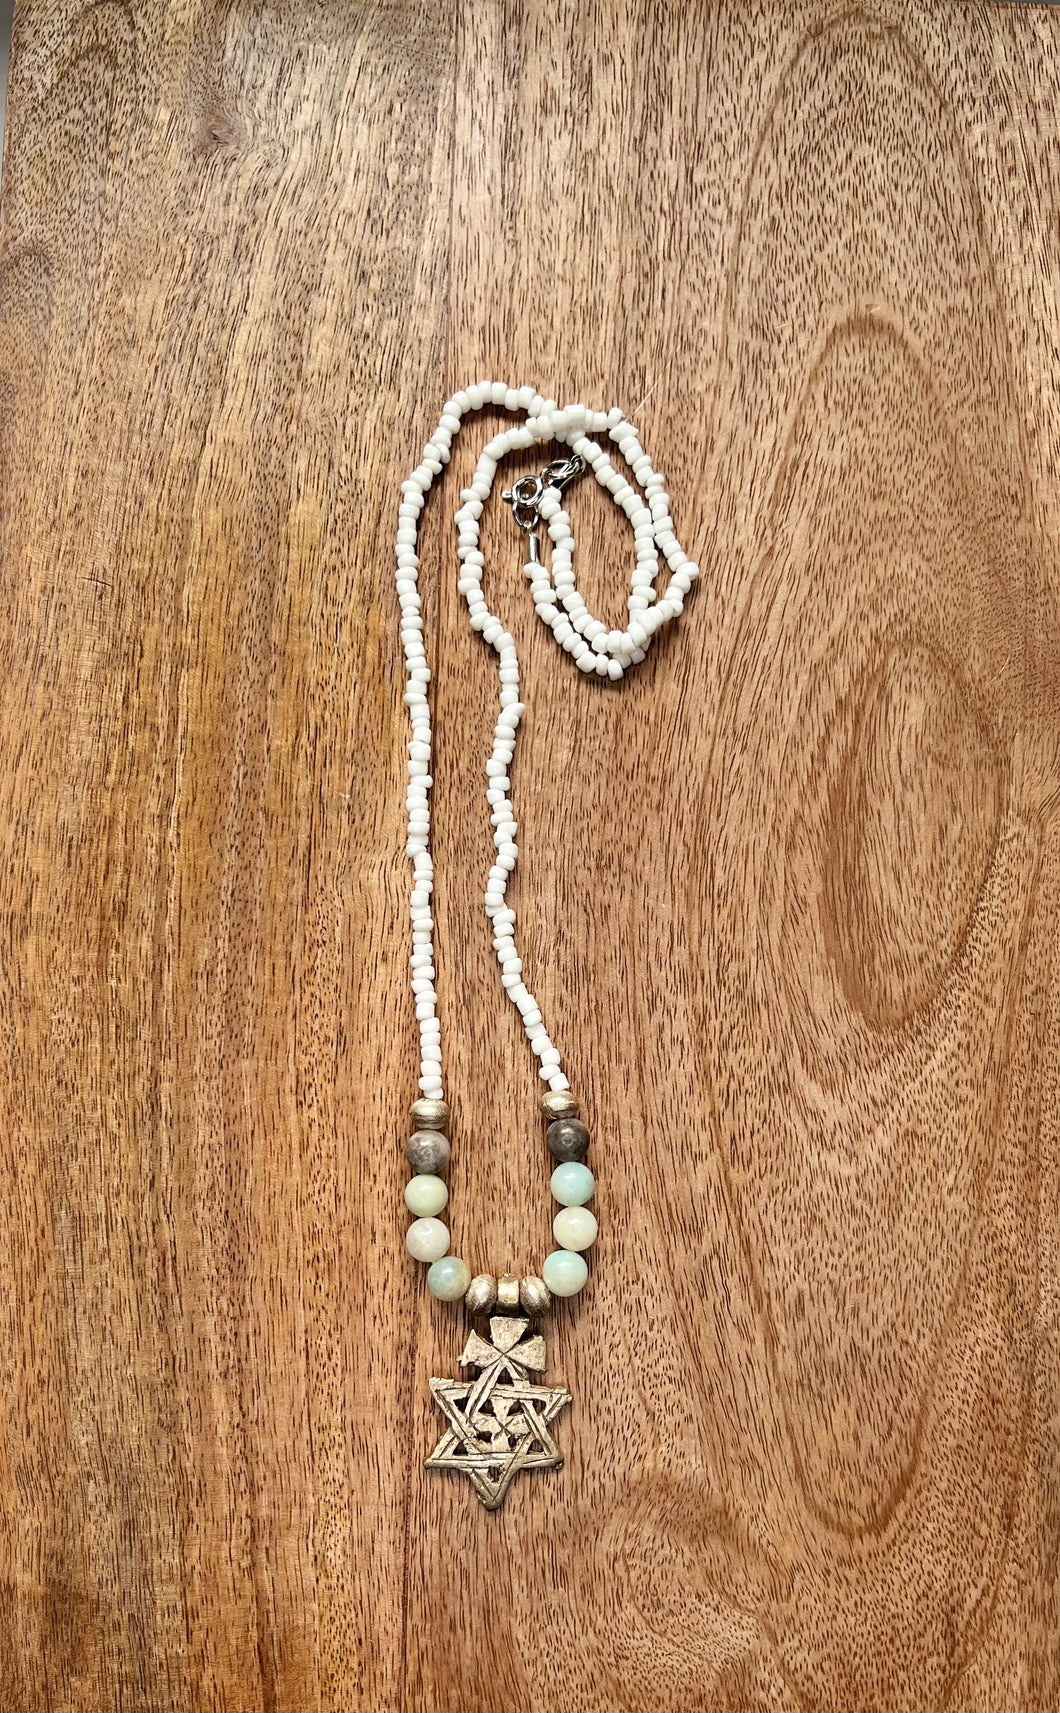 White & Amazonite beads with brass art